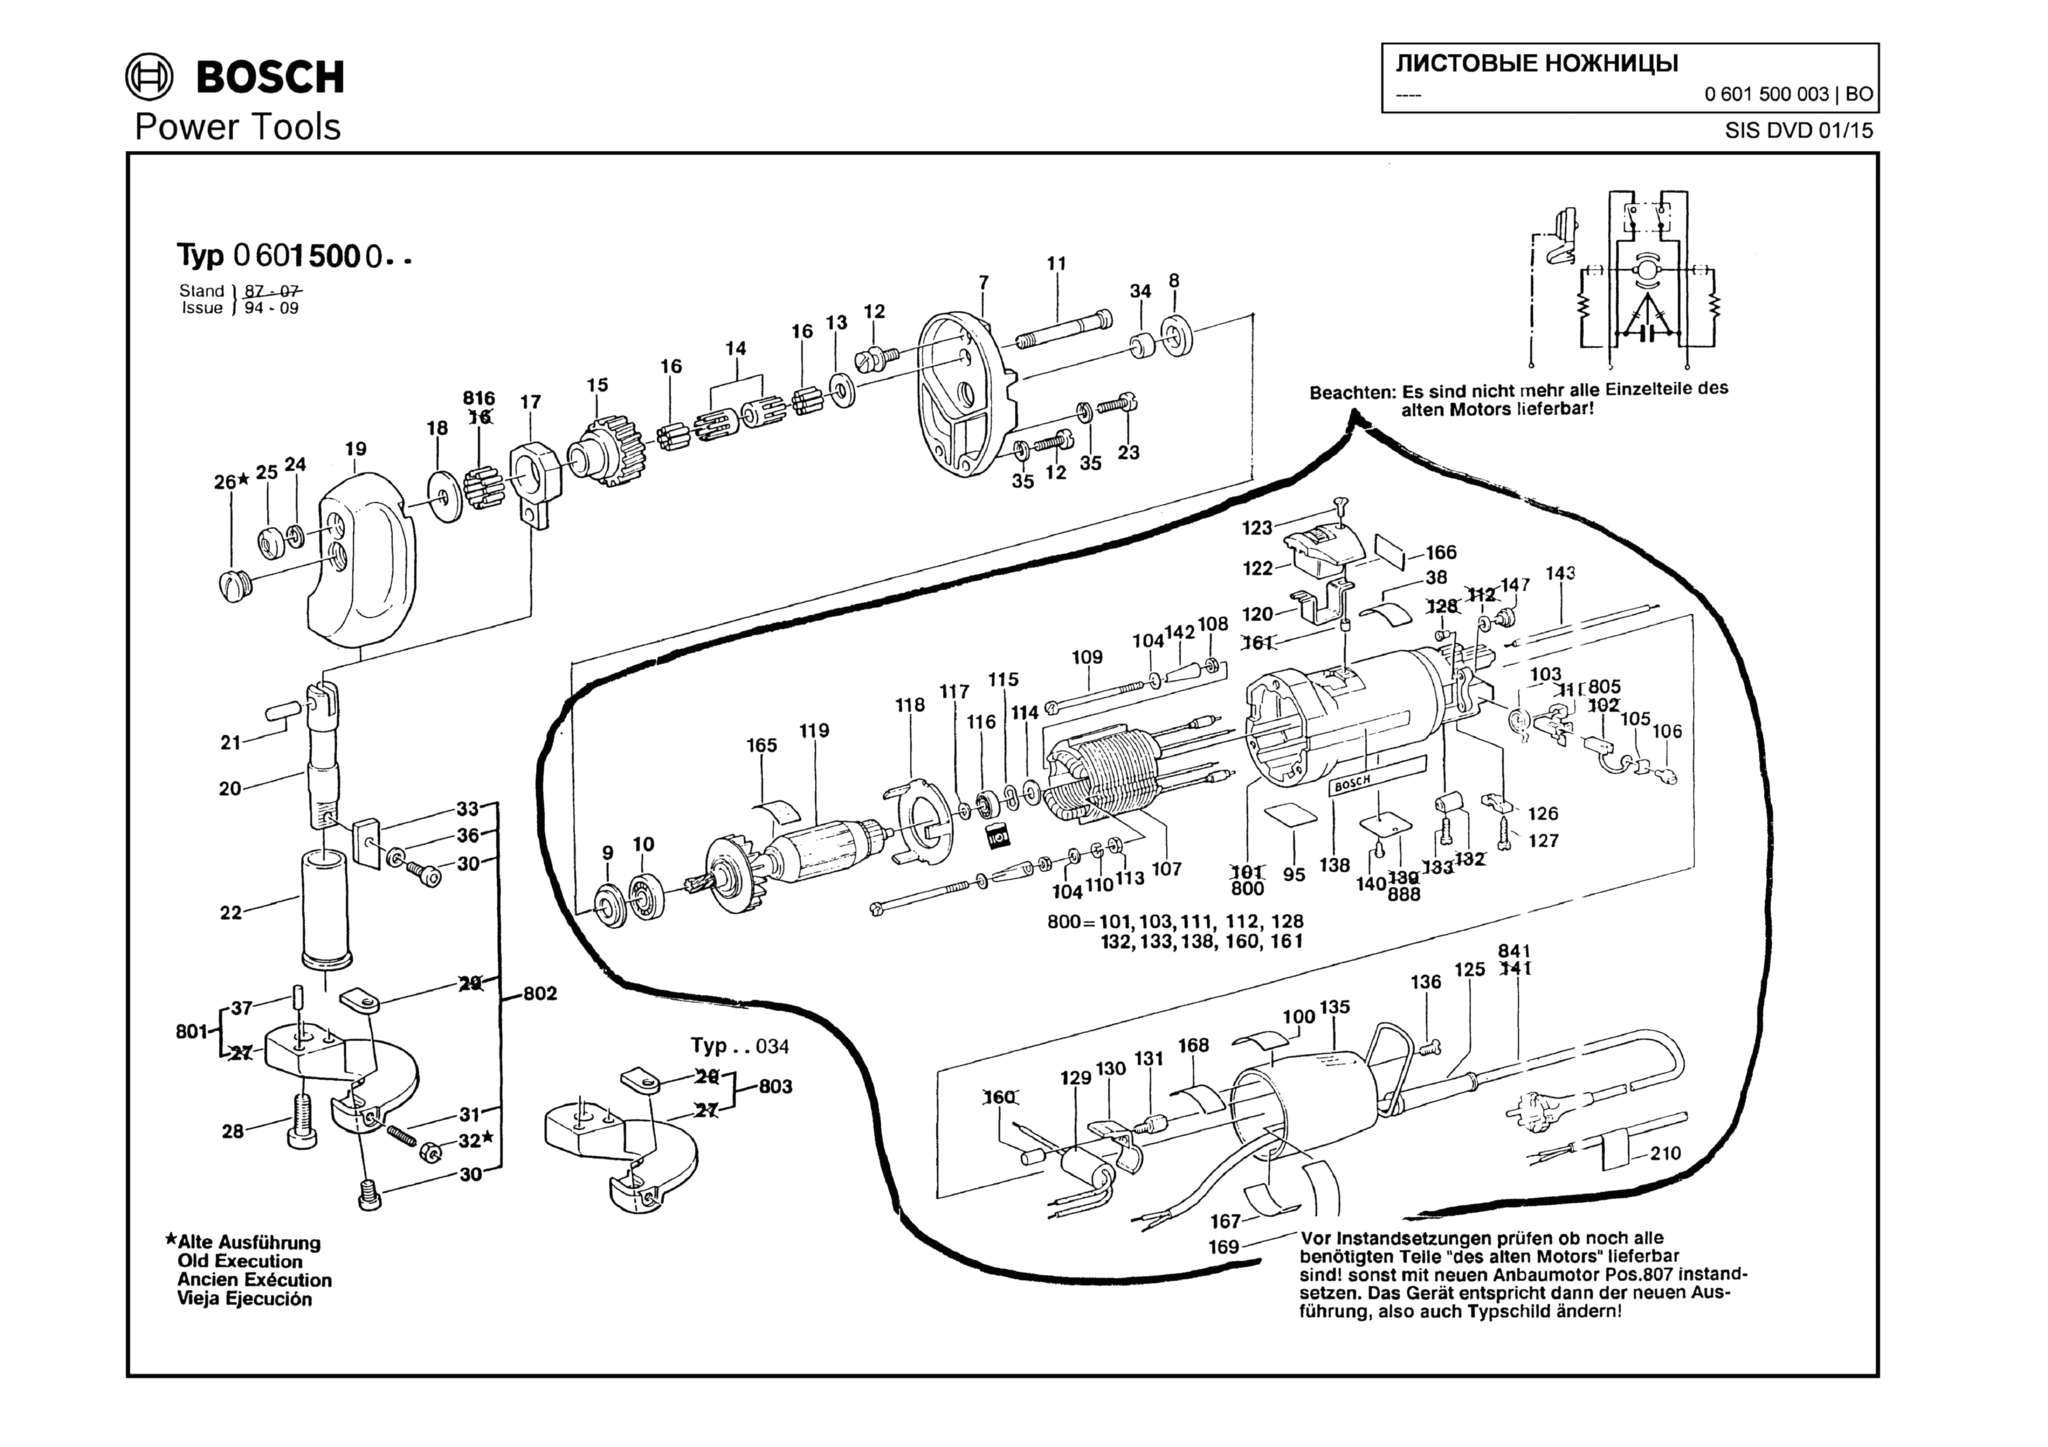 Запчасти, схема и деталировка Bosch (ТИП 0601500003)